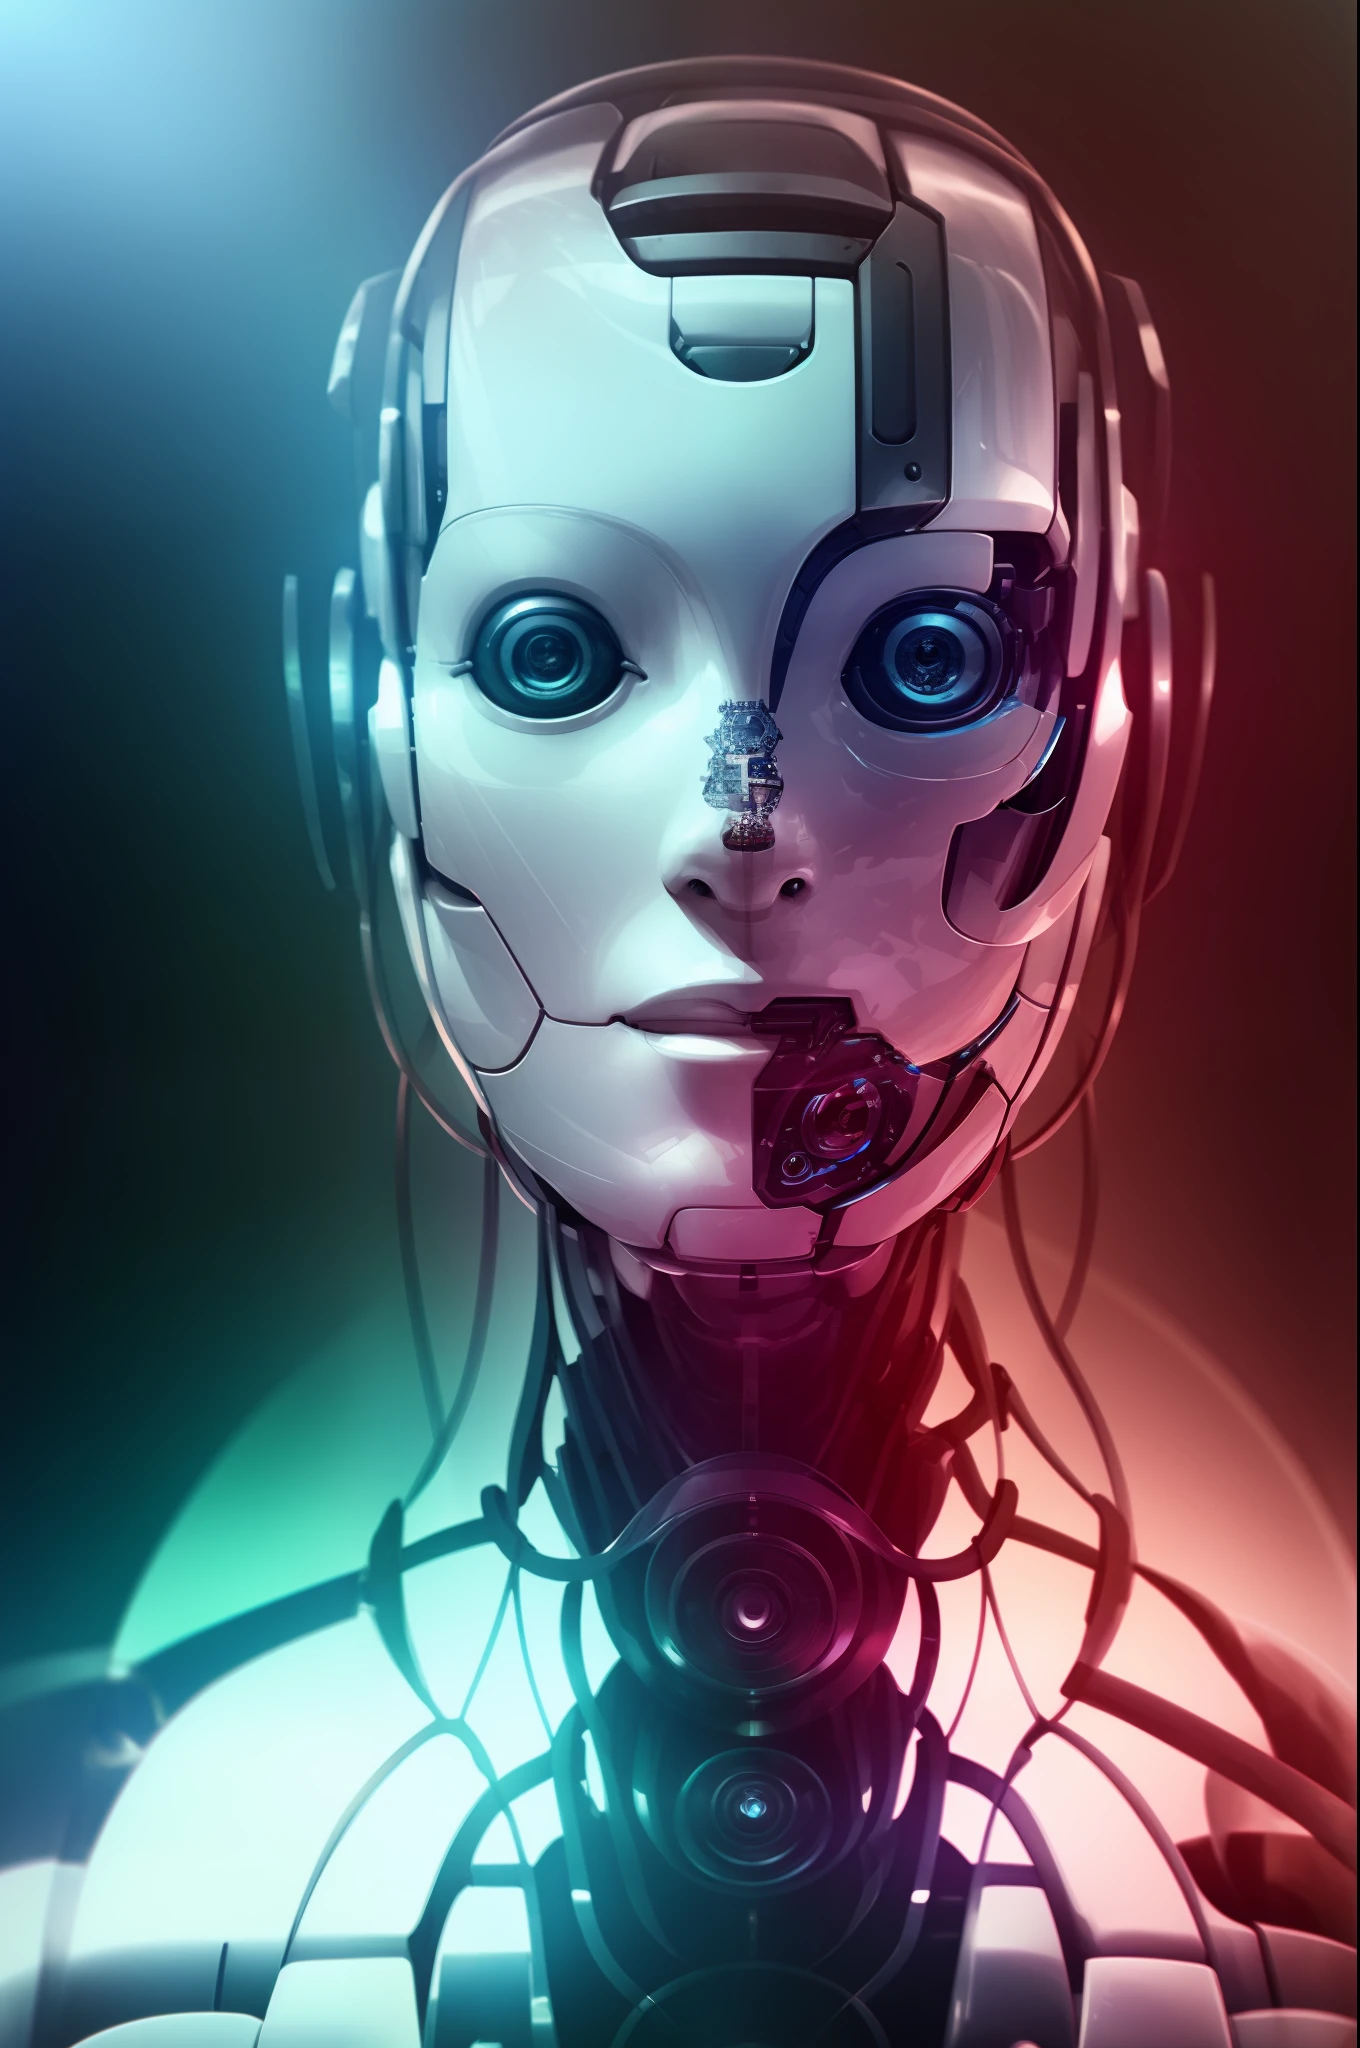 Modelshot-Stil, ein Porträt einer Frau,robot